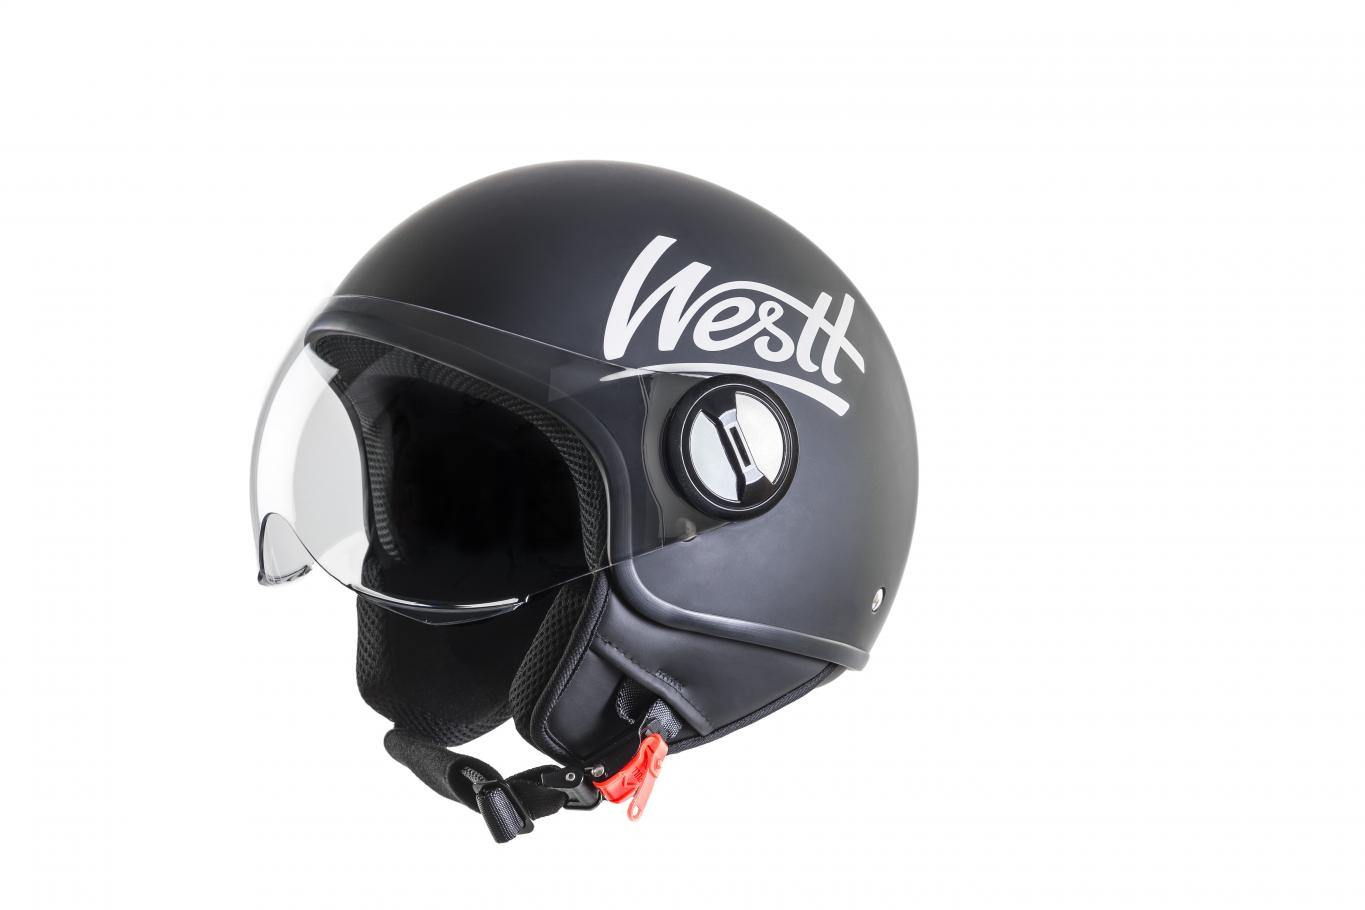 Sconto del 50% sul casco da moto Westt